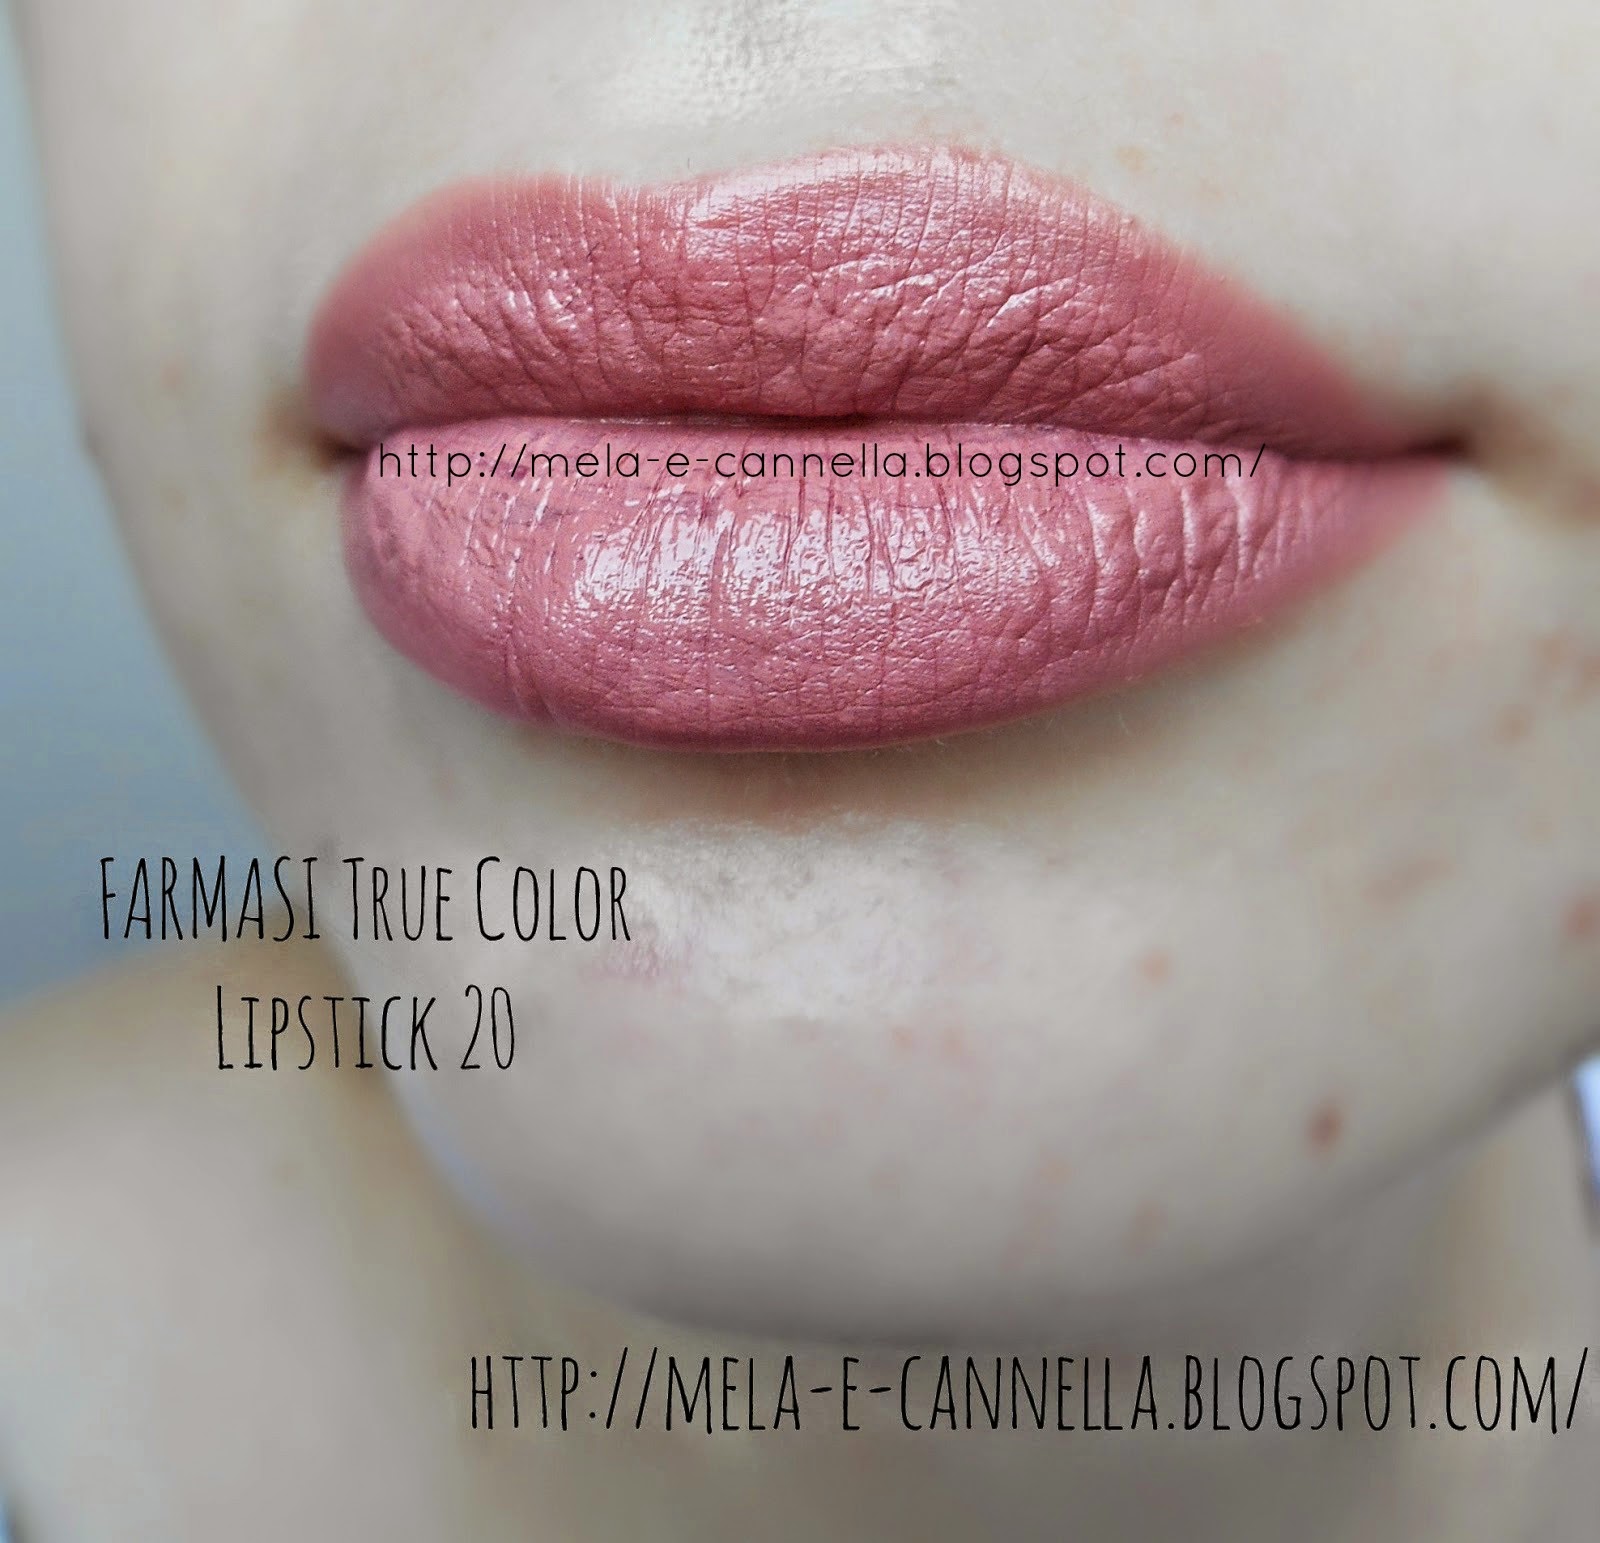 mela-e-cannella: FARMASI True Color Lipstick 20 - Nude